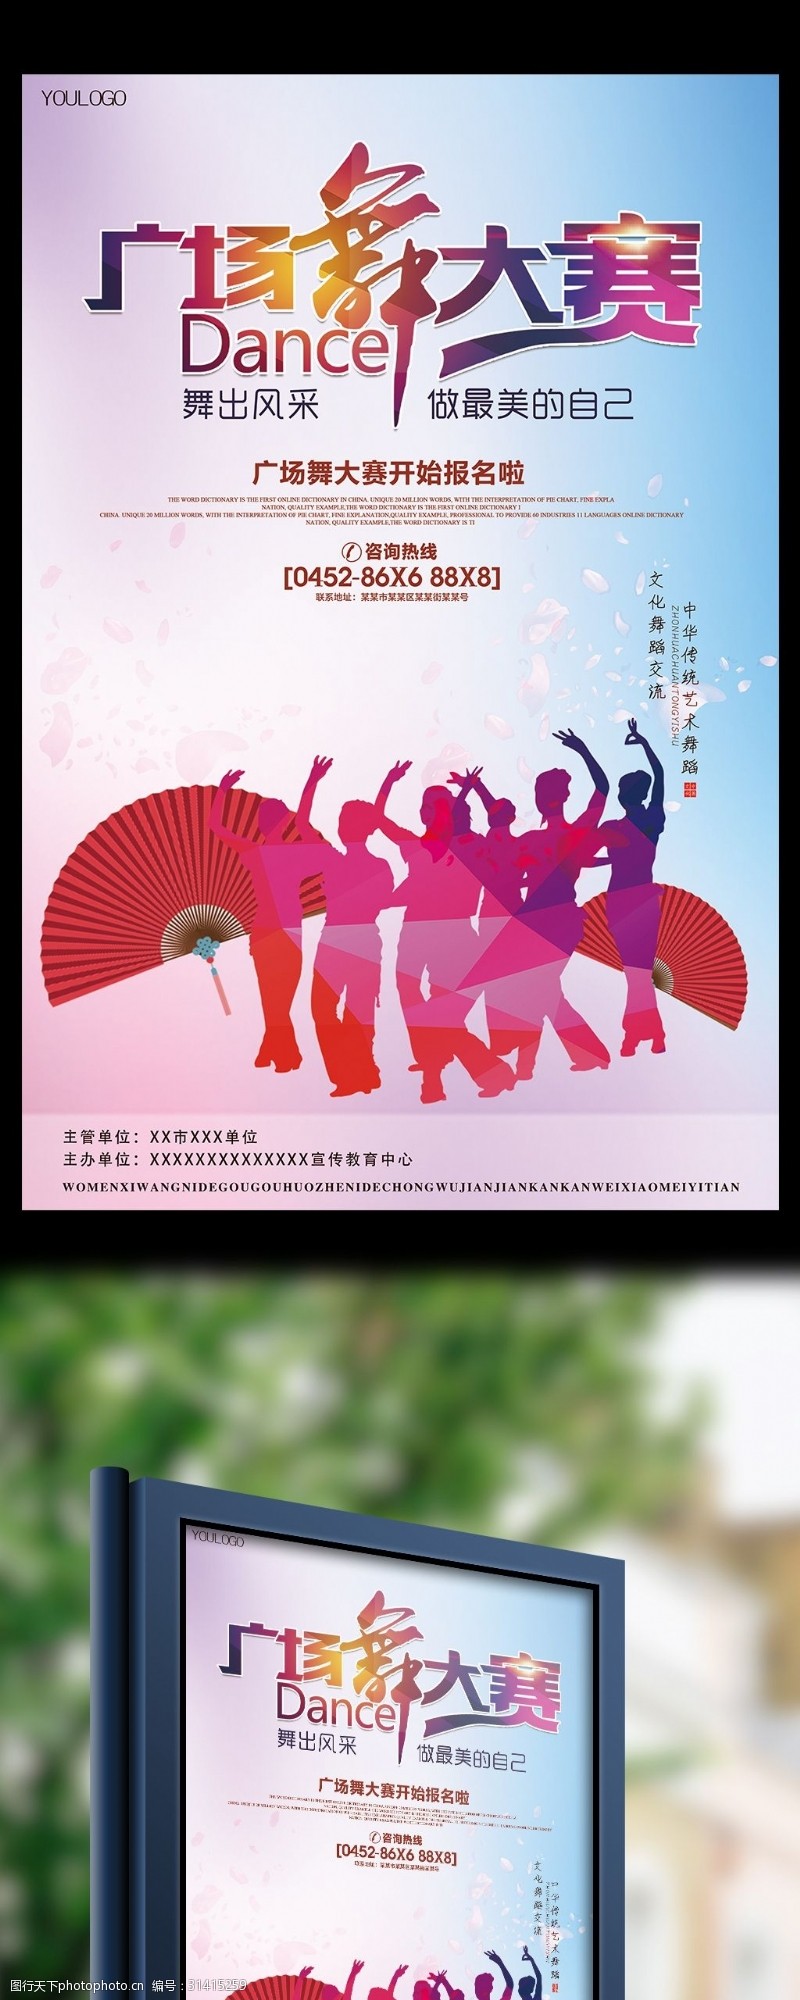 舞蹈培训模板下载广场舞大赛比赛海报宣传单模板设计